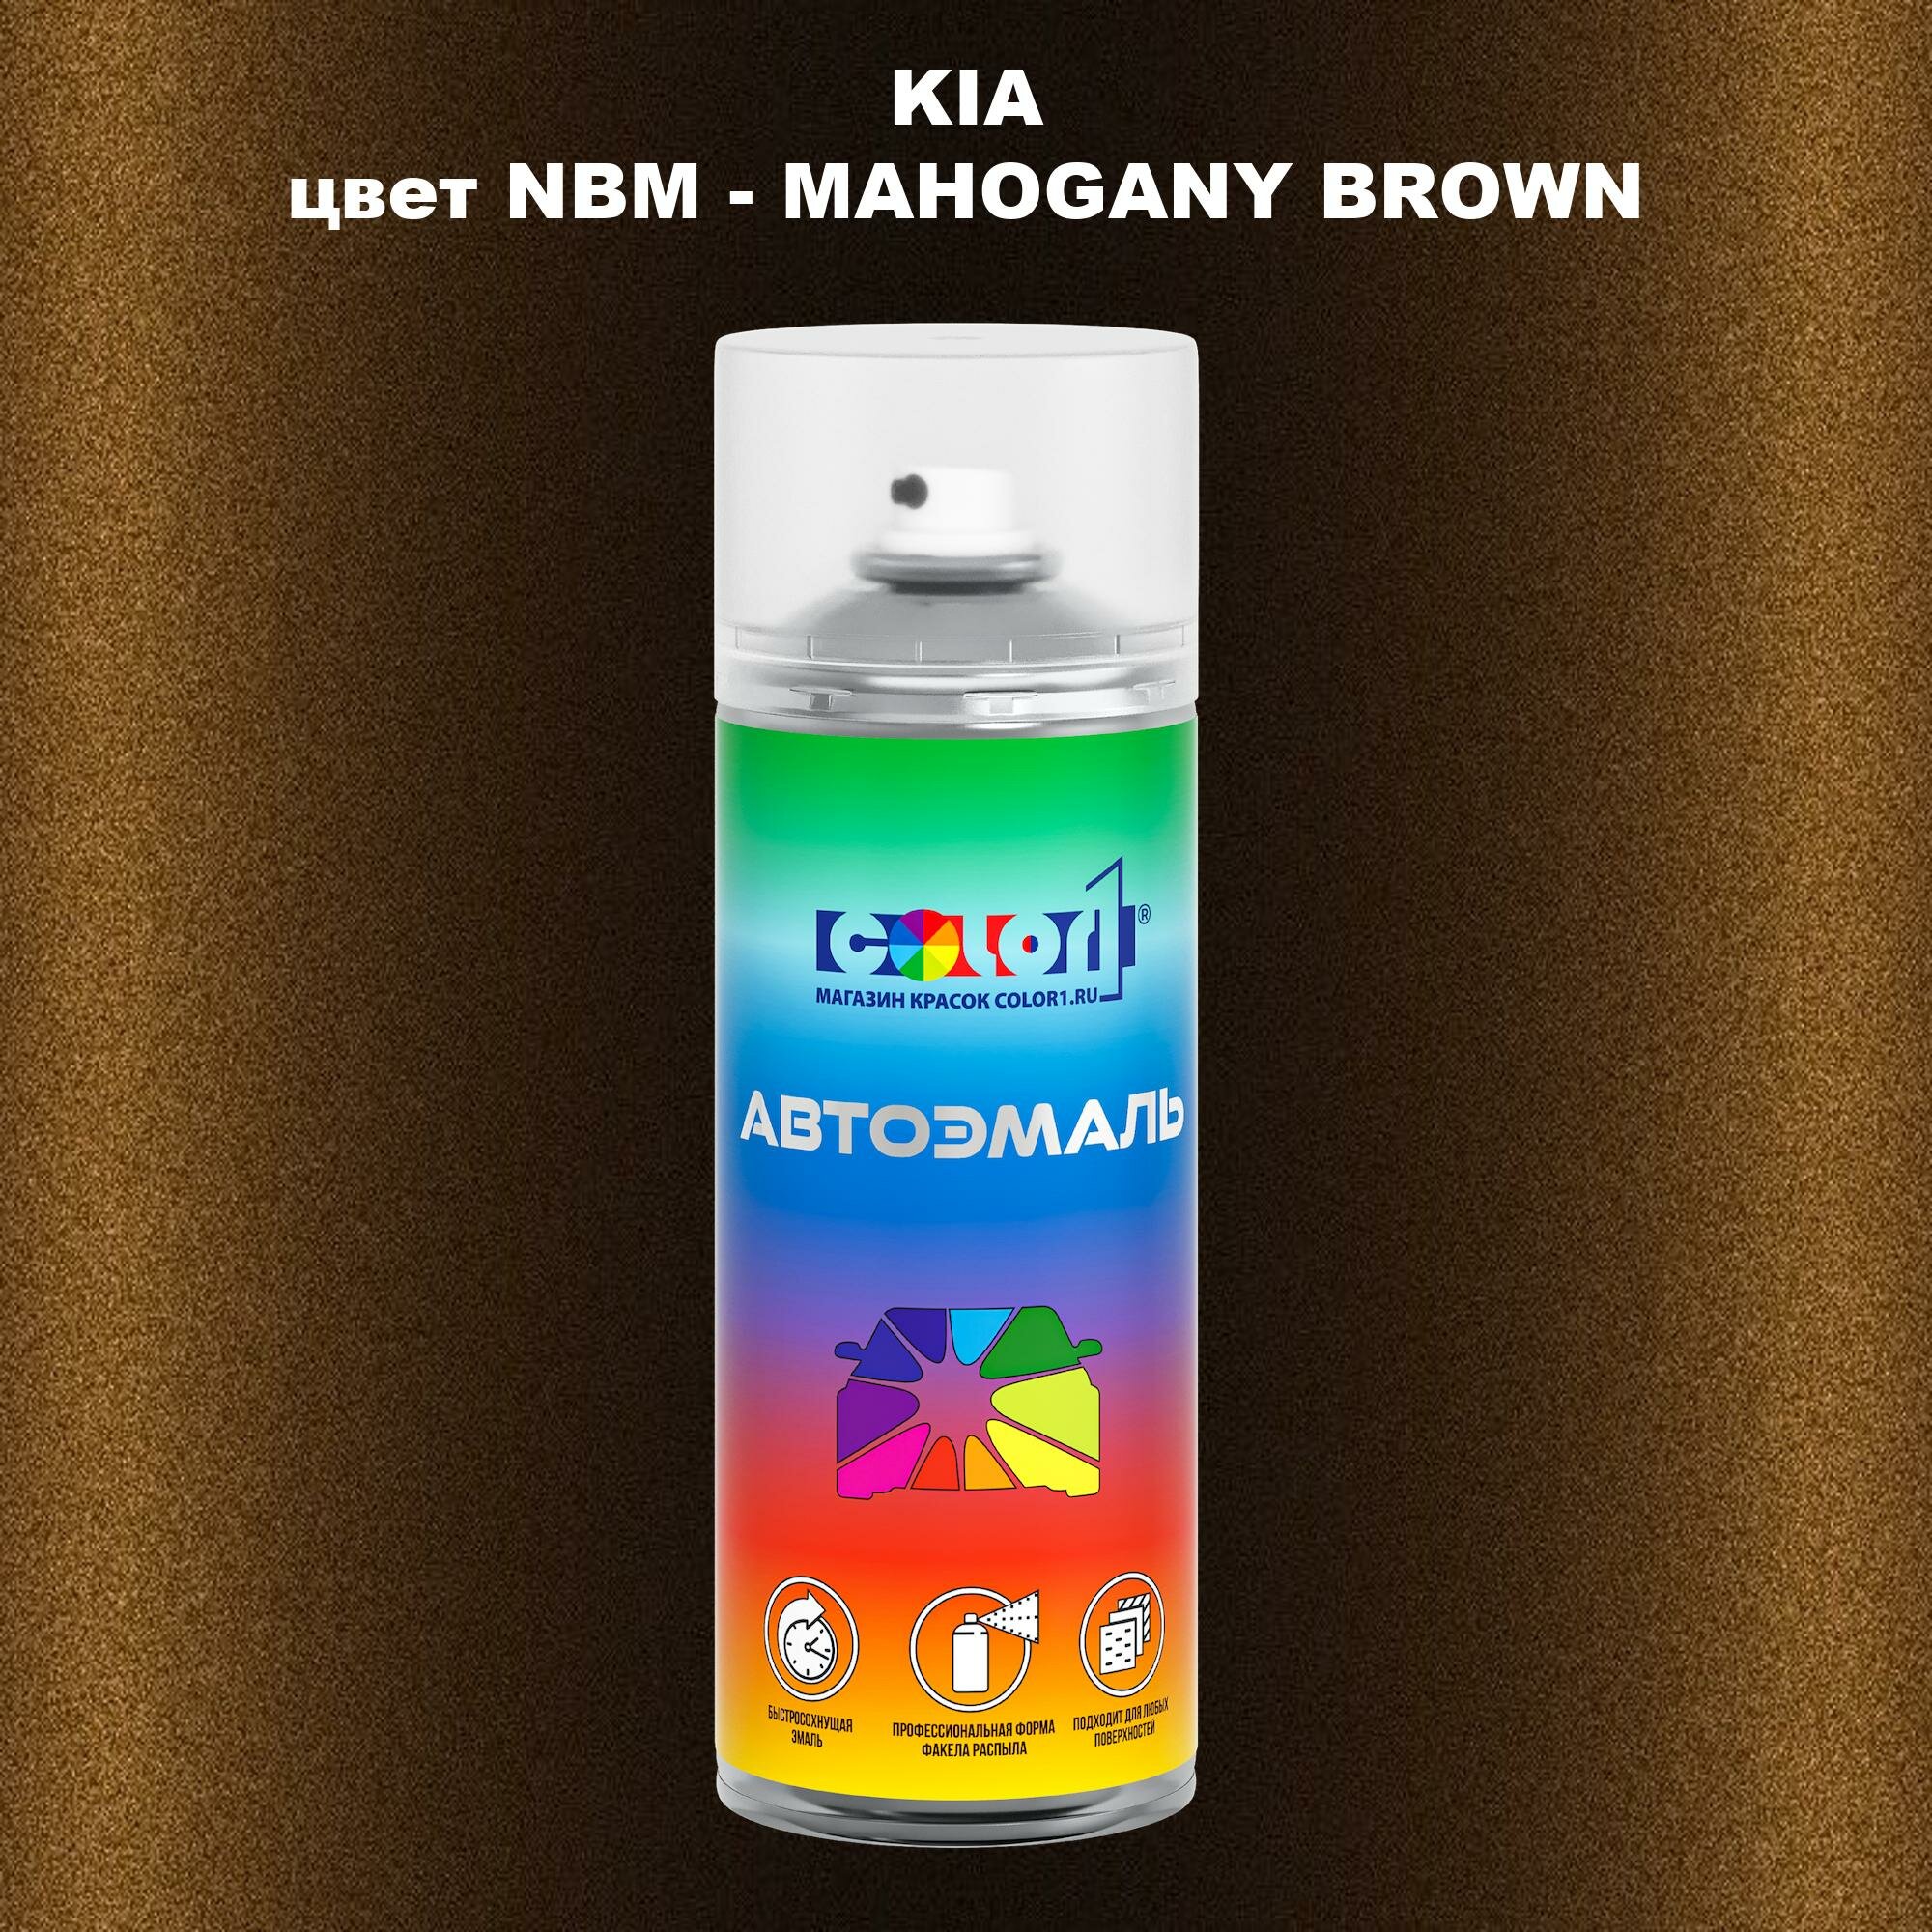 Аэрозольная краска COLOR1 для KIA, цвет NBM - MAHOGANY BROWN